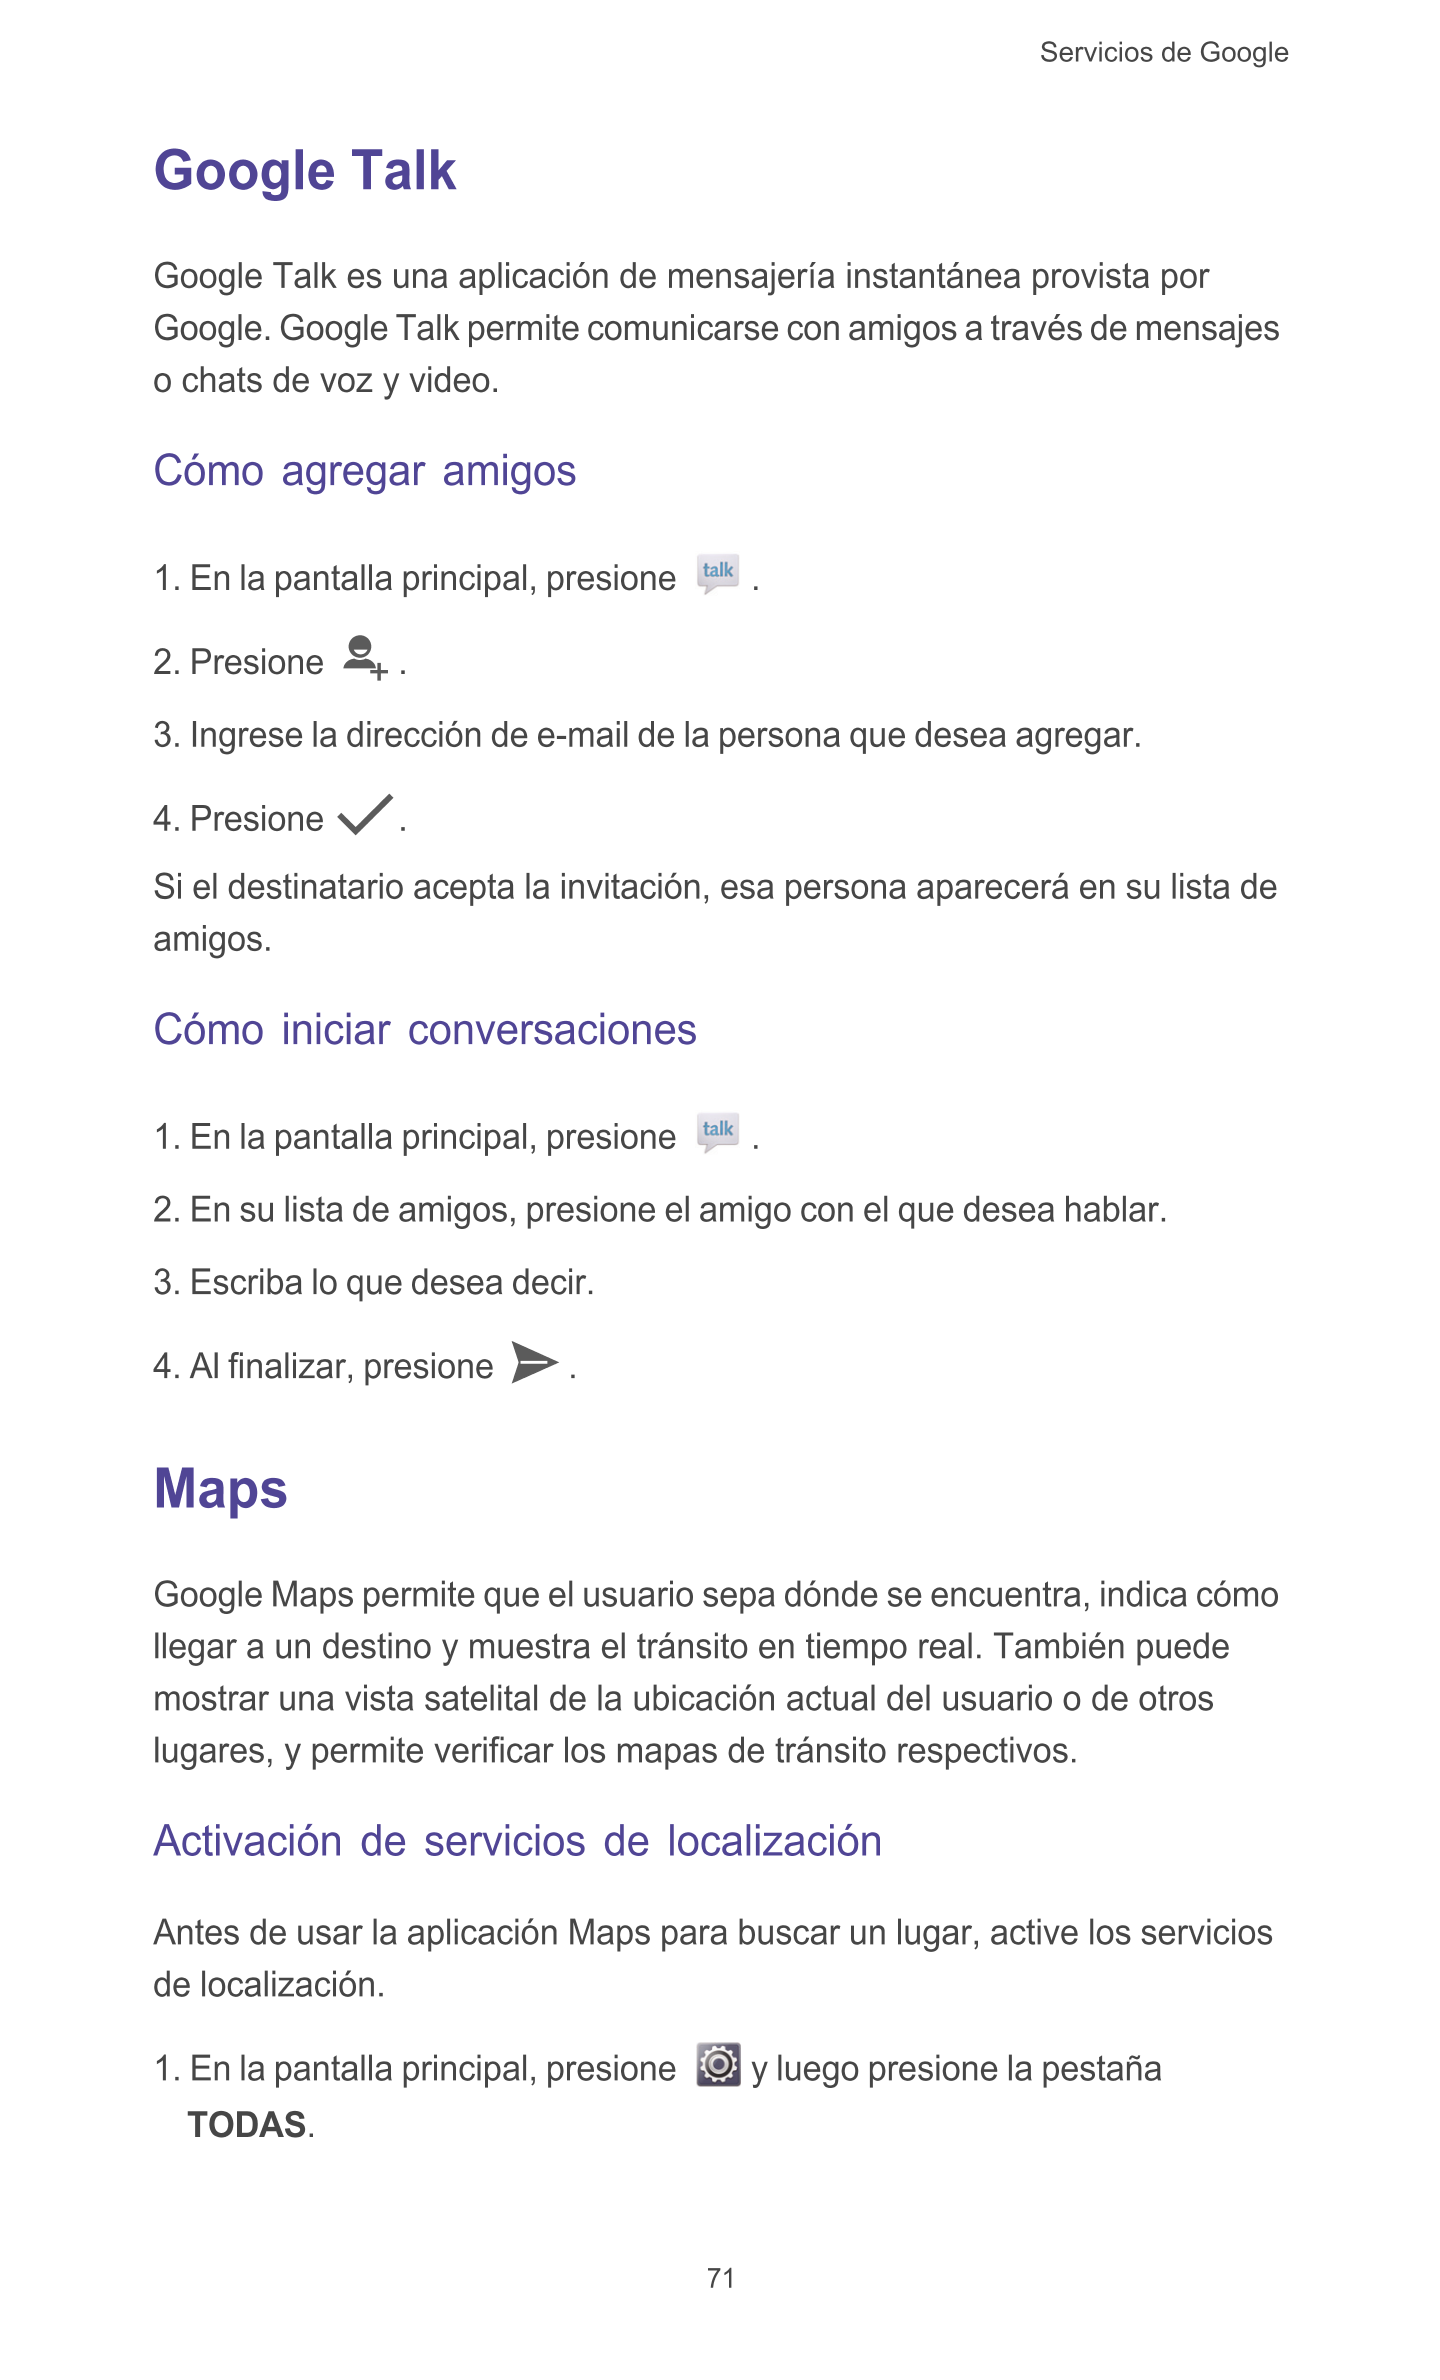 Servicios de Google  
Google Talk
Google Talk es una aplicación de mensajería instantánea provista por 
Google. Google Talk perm